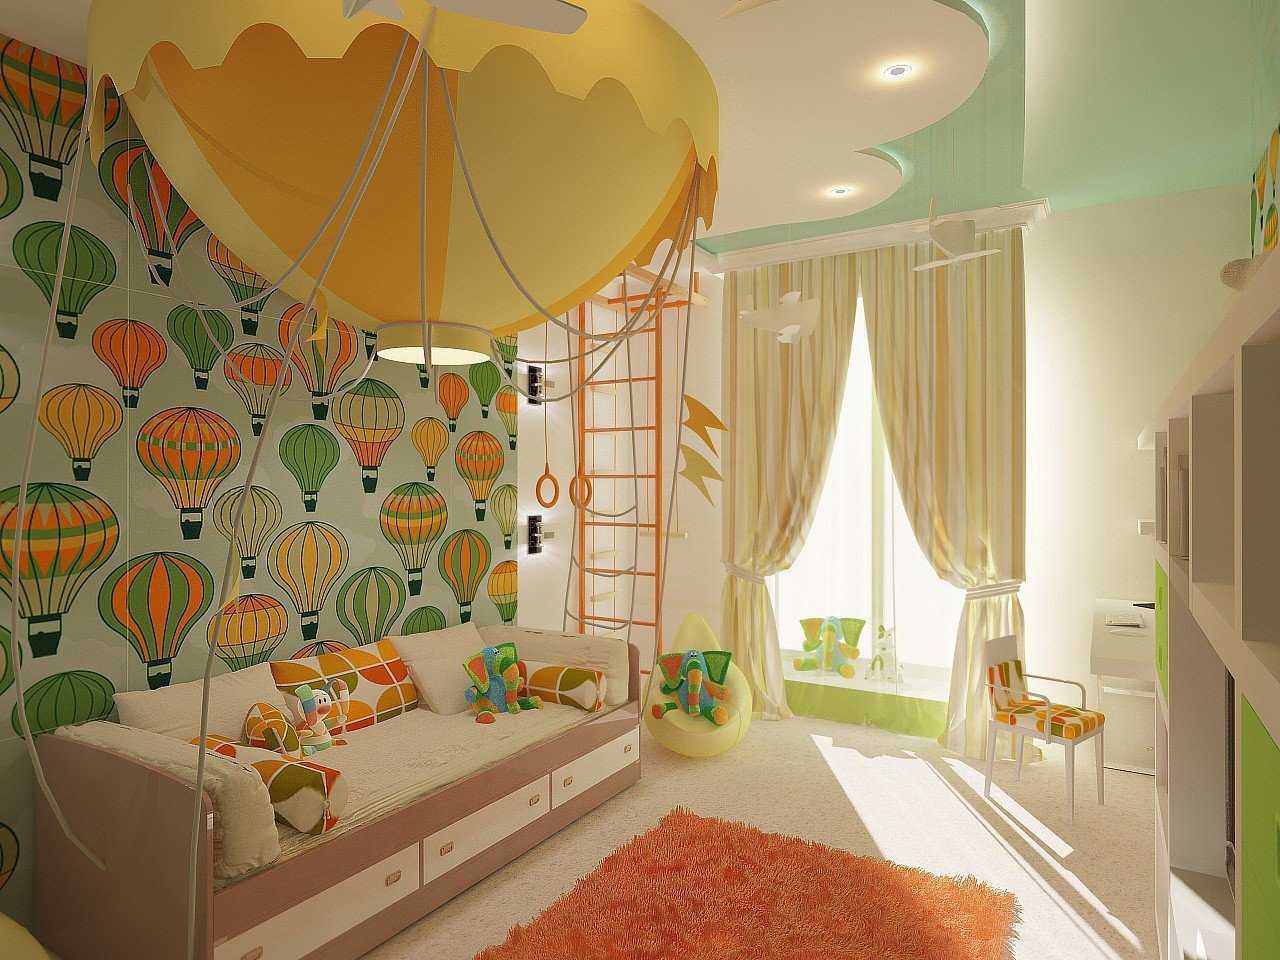 все о дизайне детской комнаты